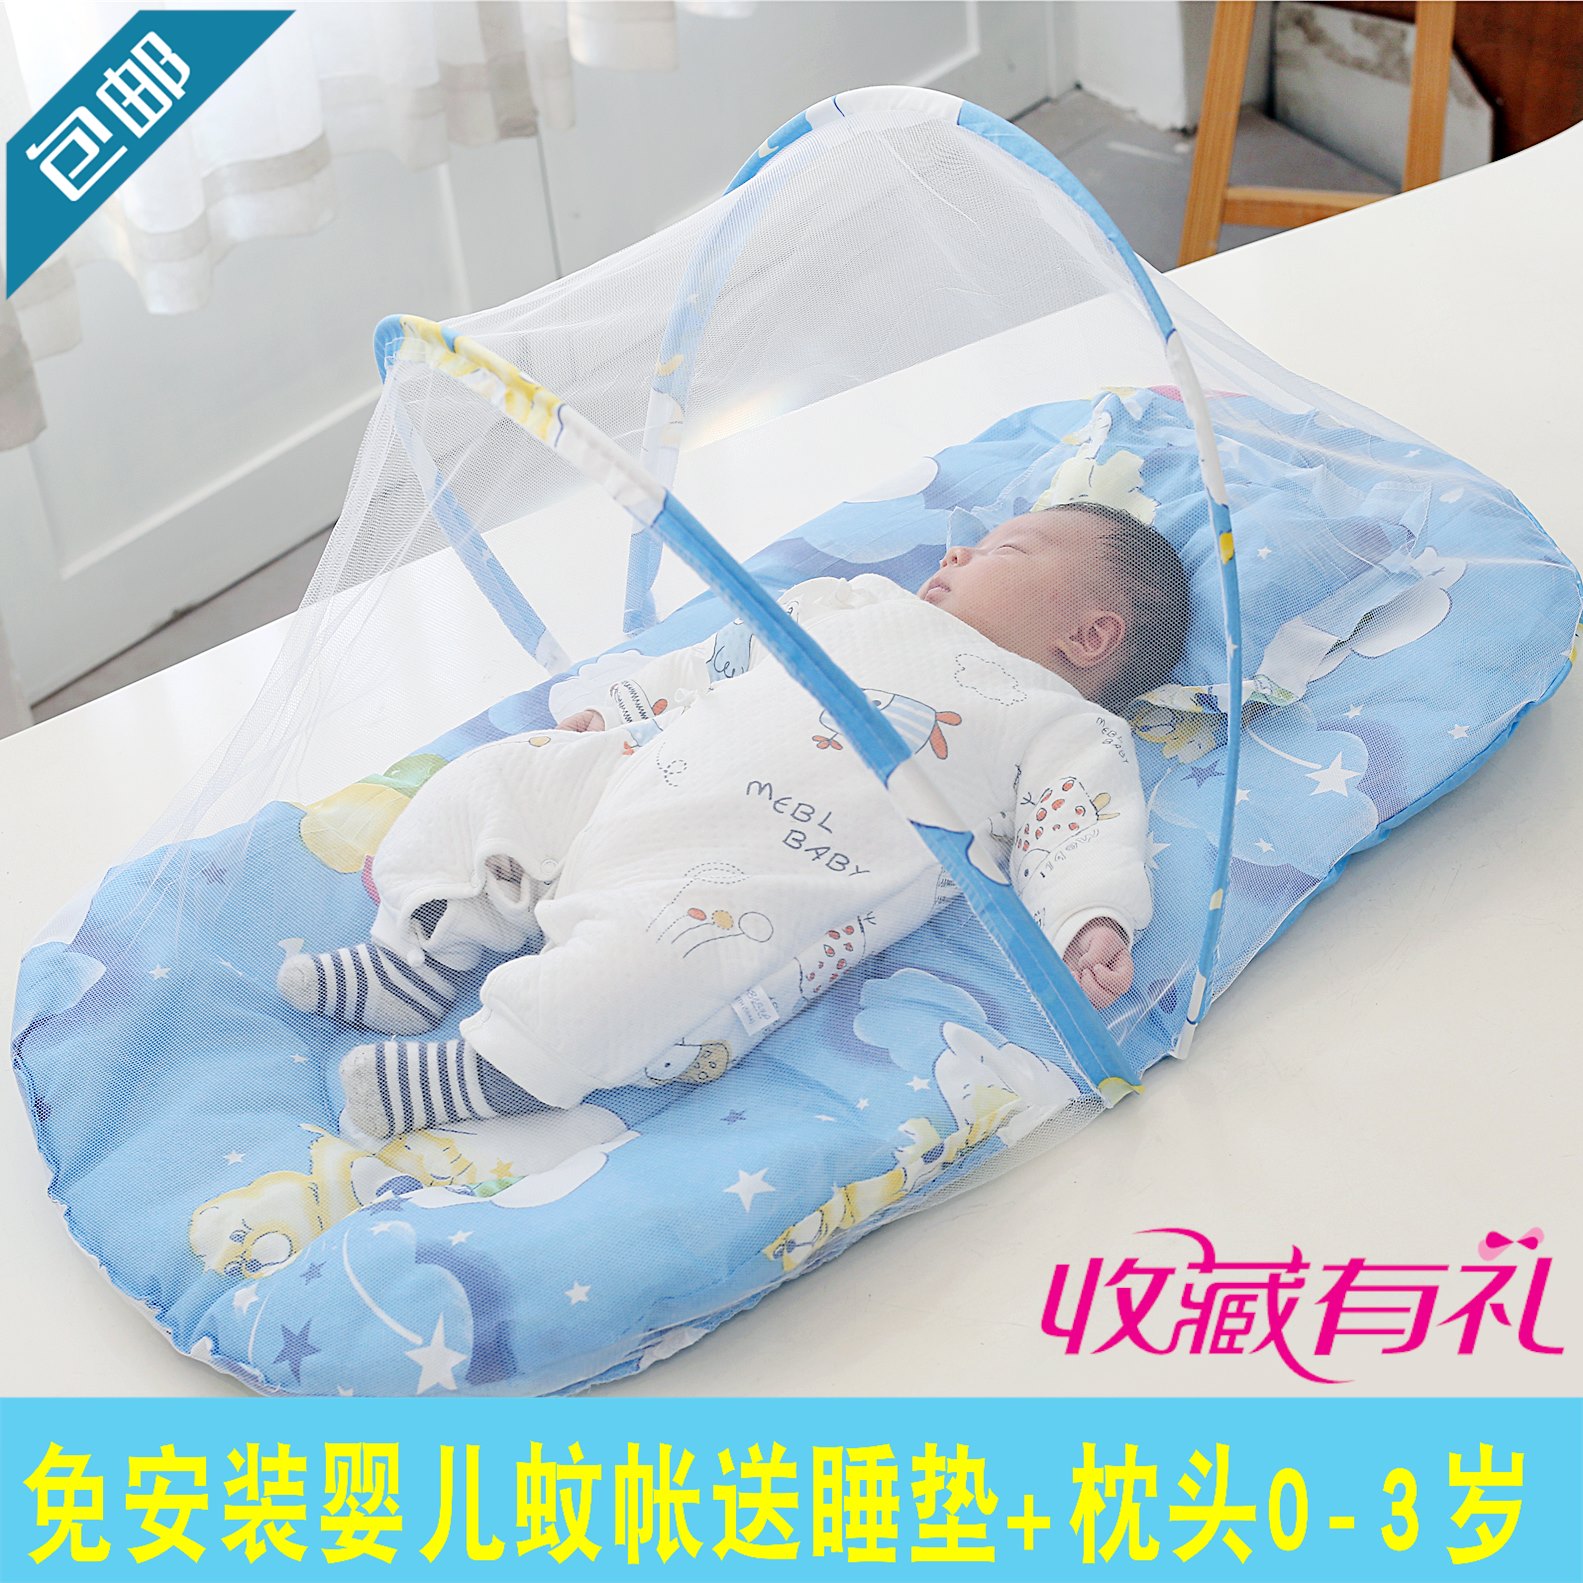 婴儿蚊帐有底棉垫可折叠小孩蒙古包新生儿童床bb蚊帐罩免安装0-3